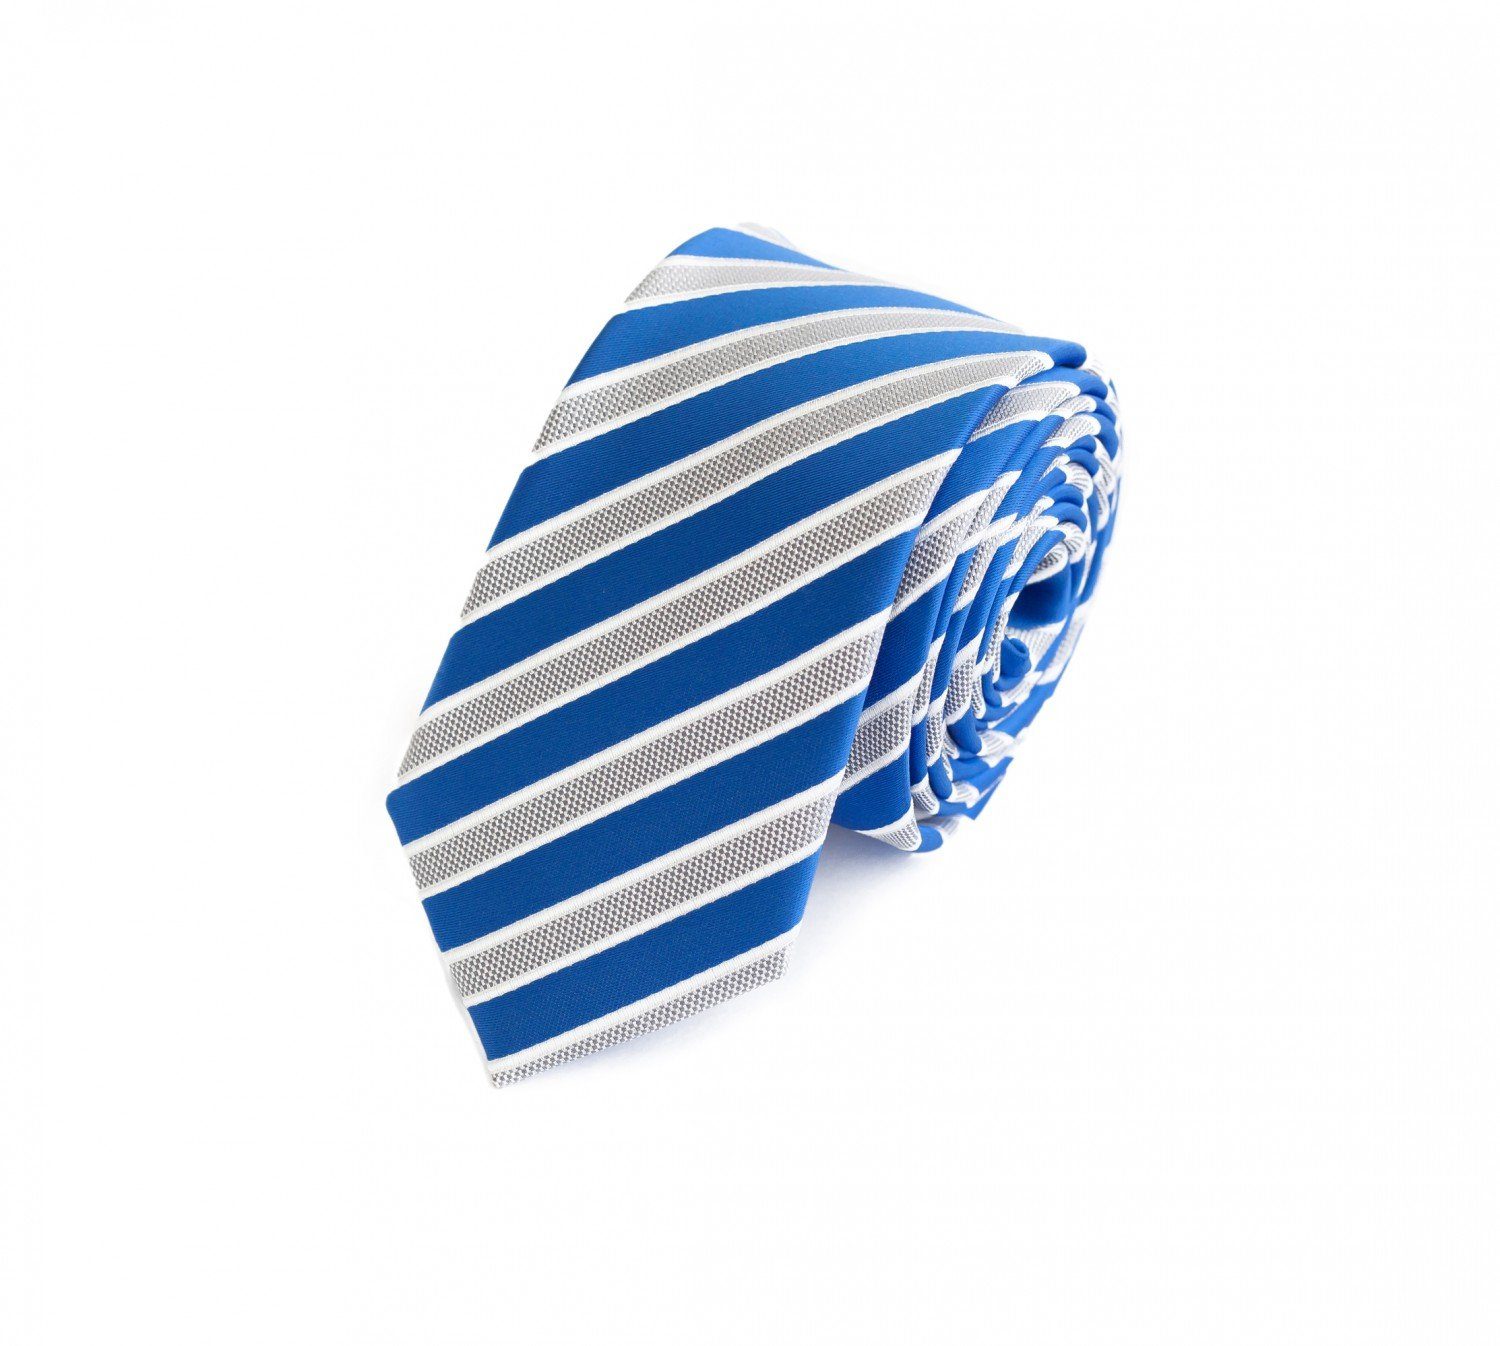 Fabio Farini Schmal - Gestreifte Gestreift) in Blau/Weiß/Silber (6cm), Schlips 6cm Krawatten Box, Weiße Breite Blau Herren Krawatte (ohne